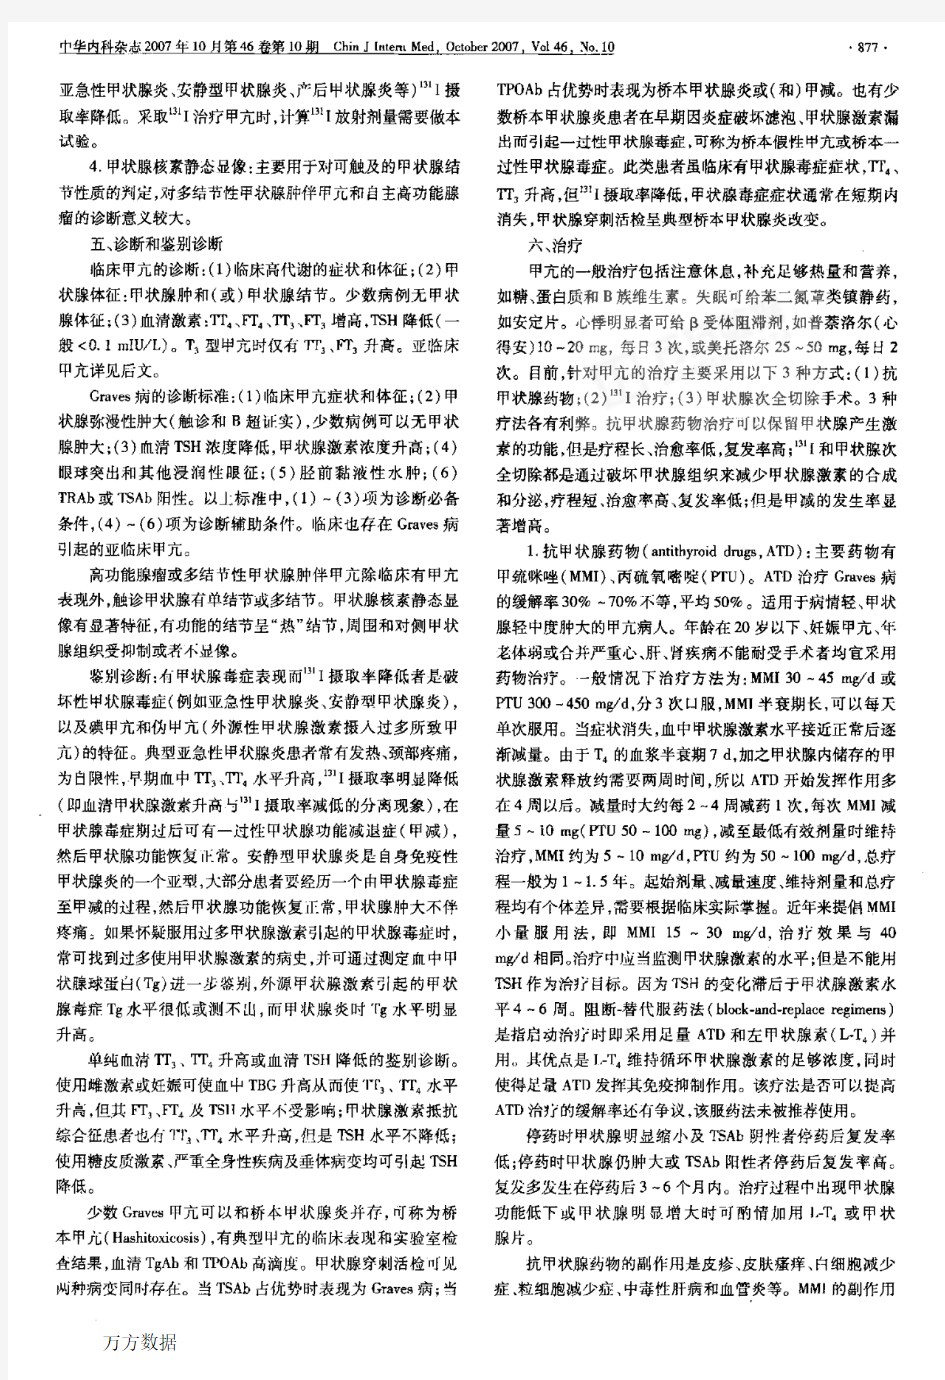 中国甲状腺疾病诊治指南——甲状腺功能亢进症